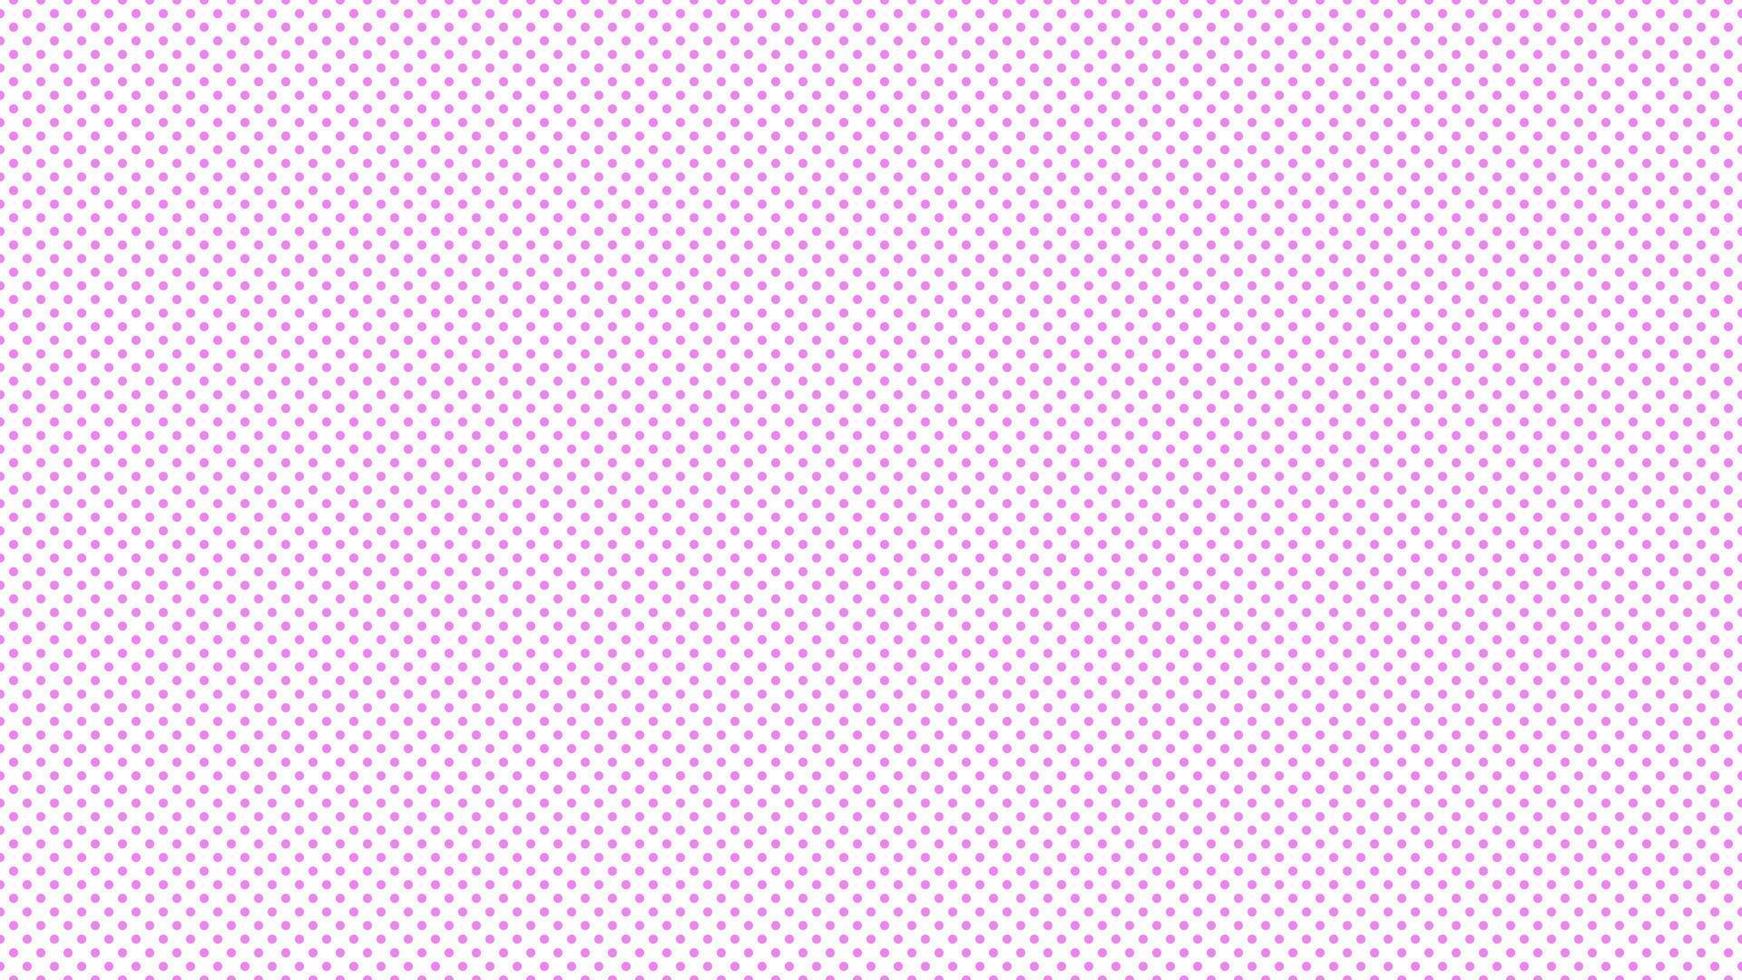 violet purple color polka dots background vector